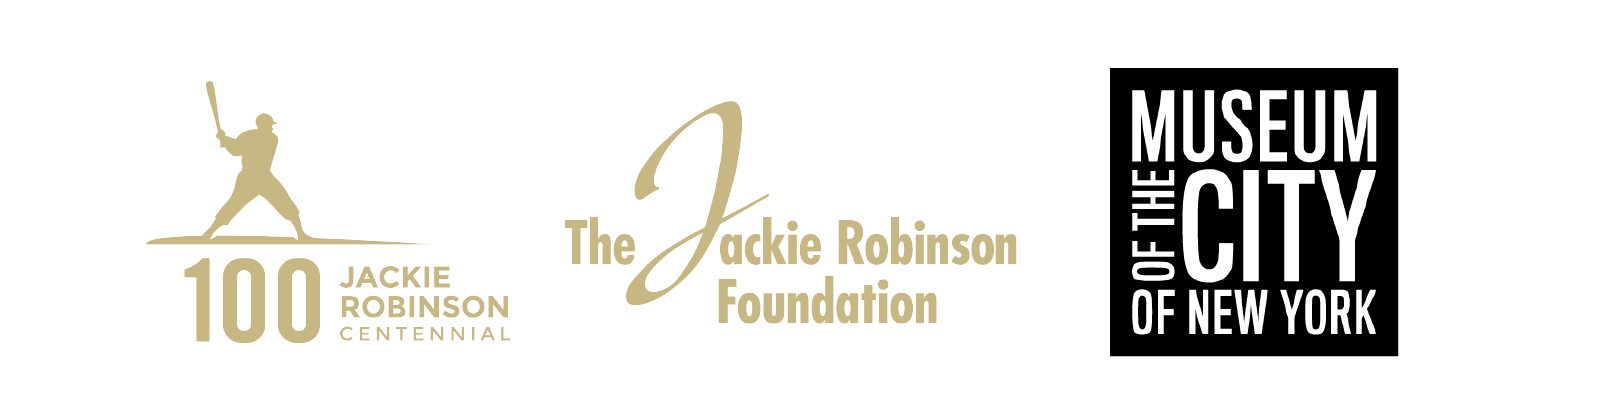 Jackie Robinson Centennial 로고, Jackie Robinson Foundation 로고, 뉴욕시 박물관 로고